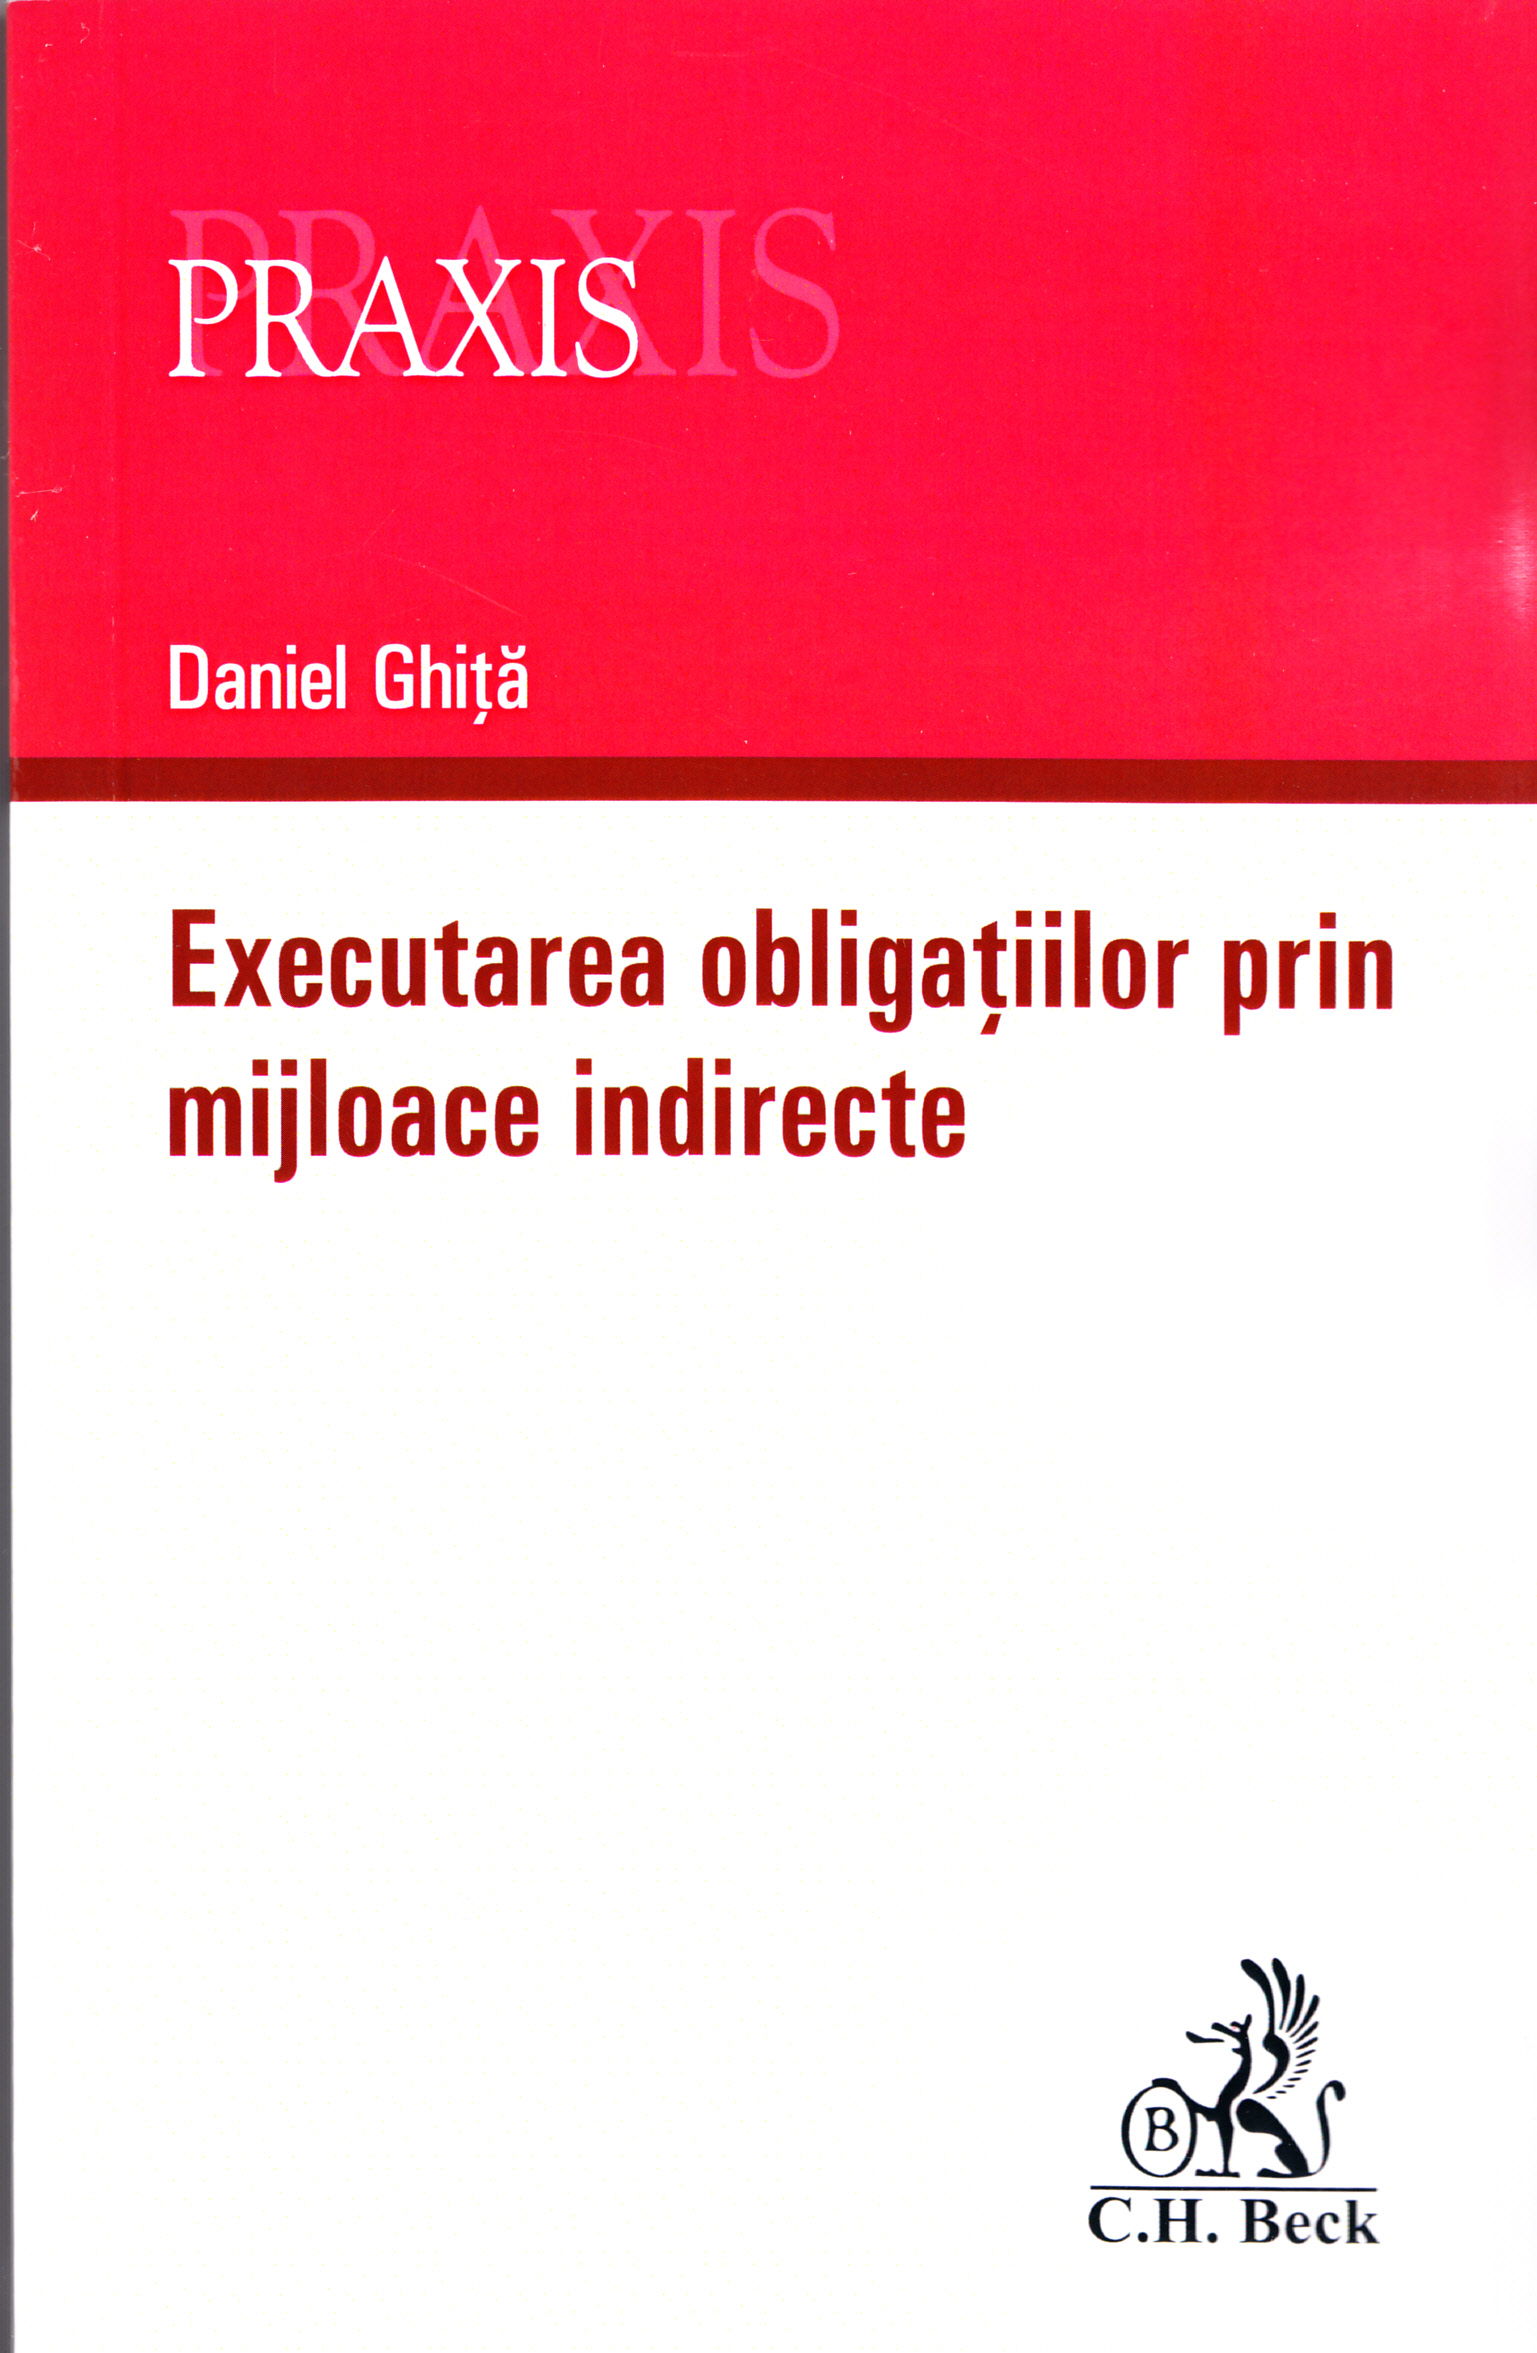 Executarea obligatiilor prin mijloace indirecte - Daniel Ghita